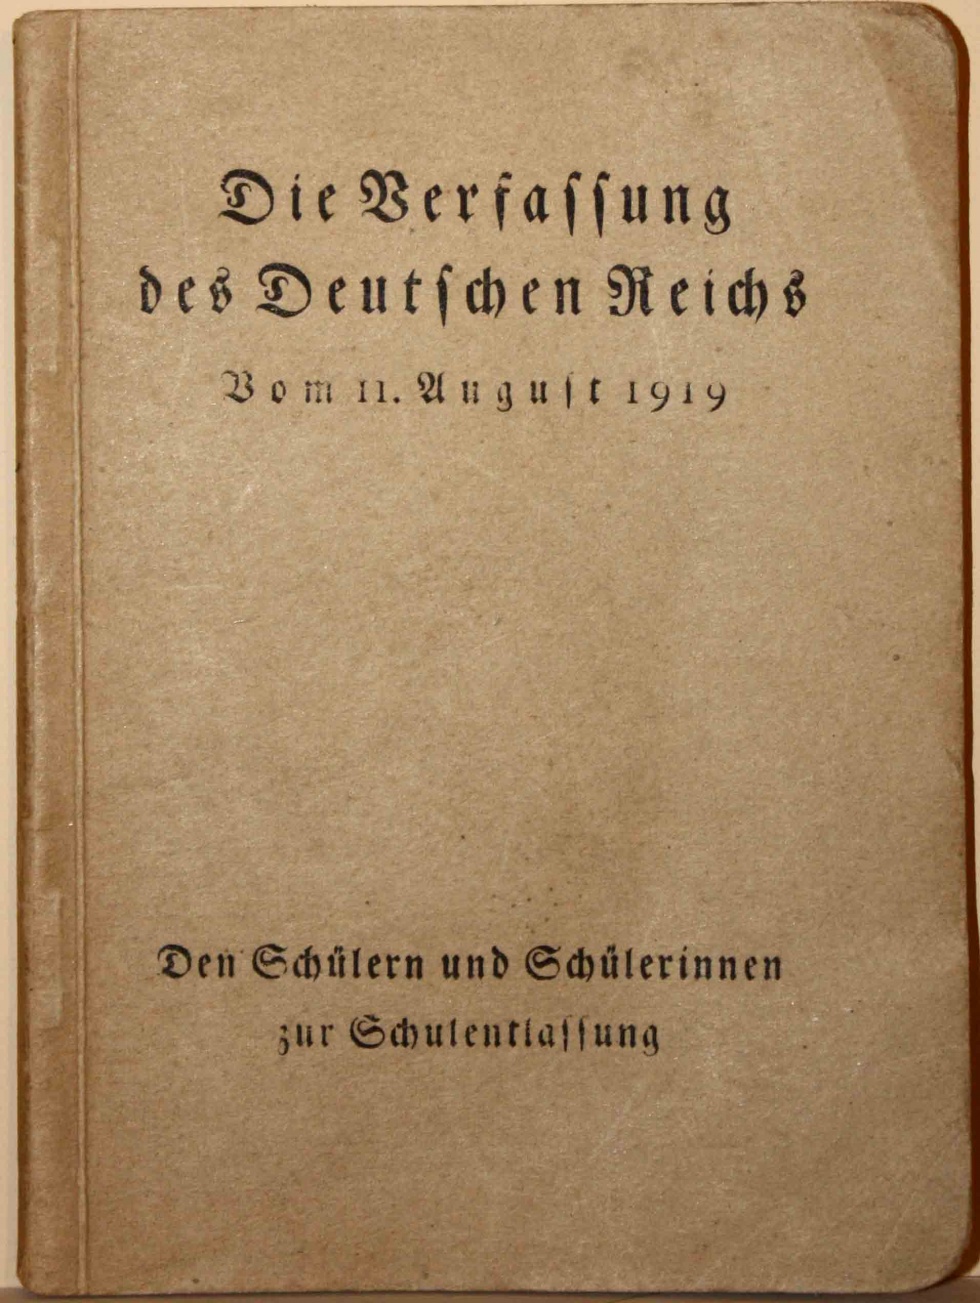 &quot;Die Verfassung des Deutschen Reichs&quot;, 1919 (Kurt Tucholsky Literaturmuseum CC BY-NC-SA)